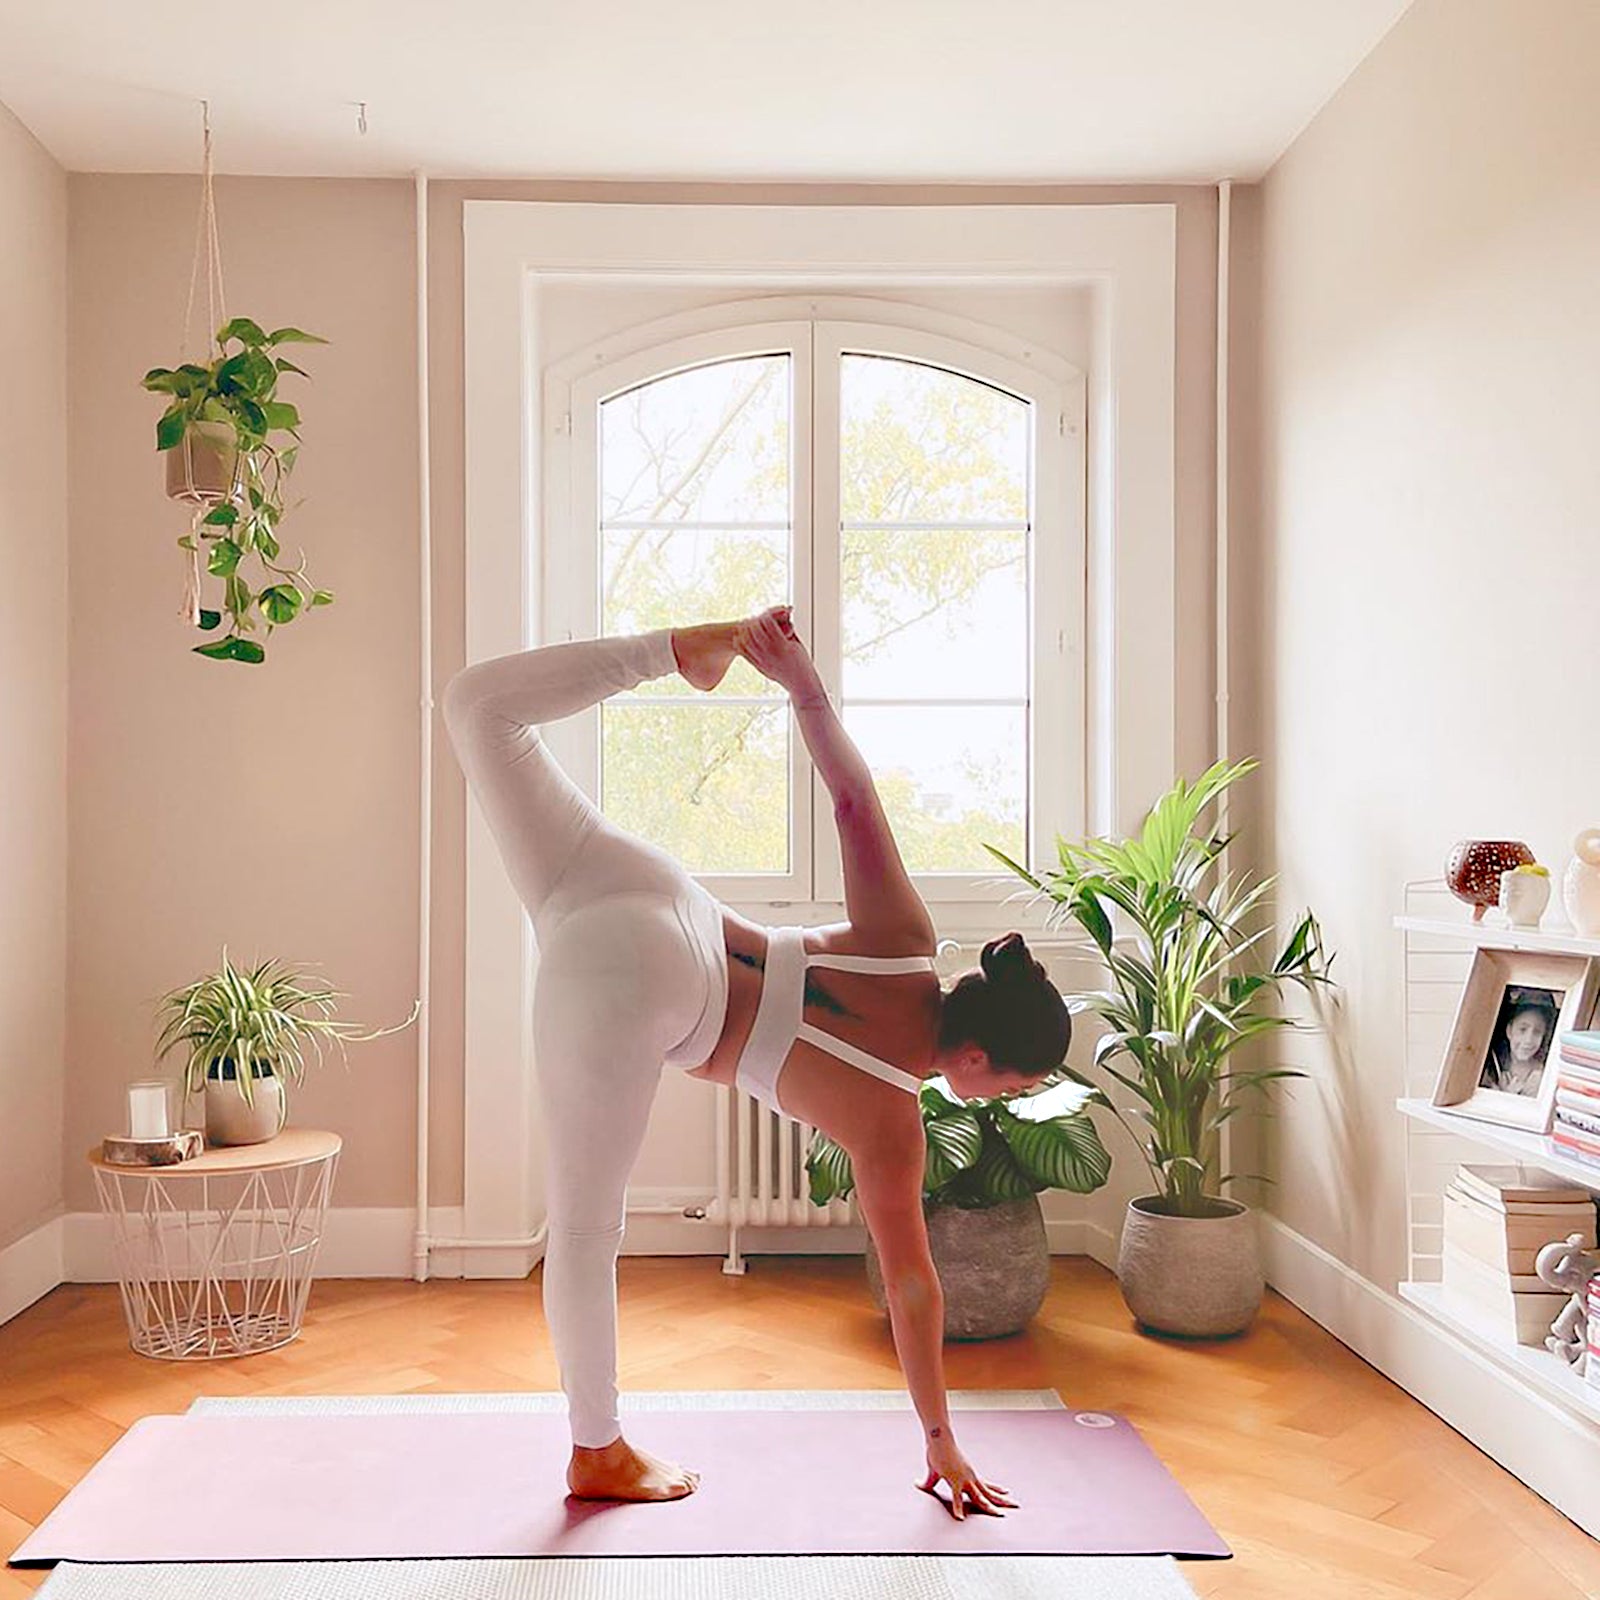 7 Tipps Fur Das Yoga Workout Zu Hause Luviyo Gmbh